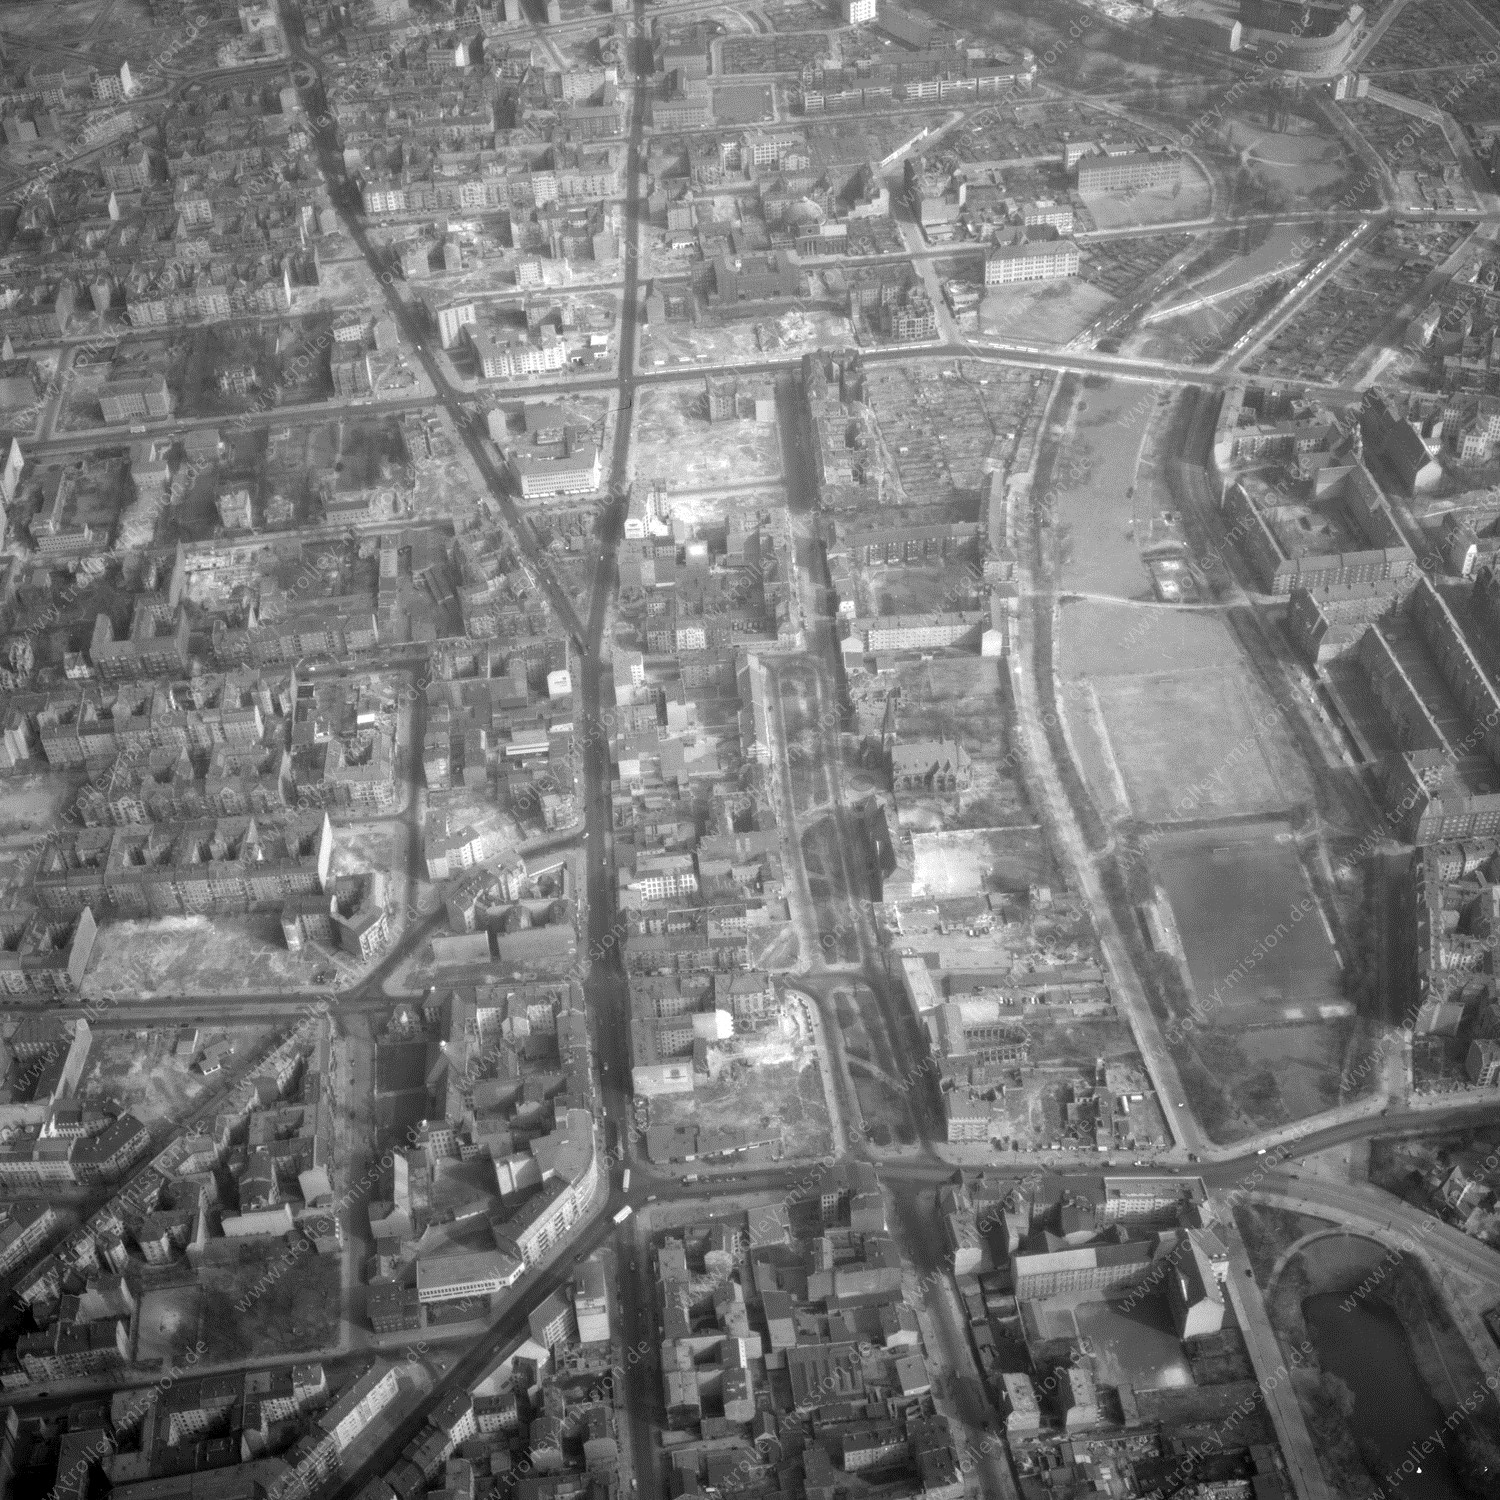 Alte Fotos und Luftbilder von Berlin - Luftbildaufnahme Nr. 02 - Historische Luftaufnahmen von West-Berlin aus dem Jahr 1954 - Flugstrecke Delta